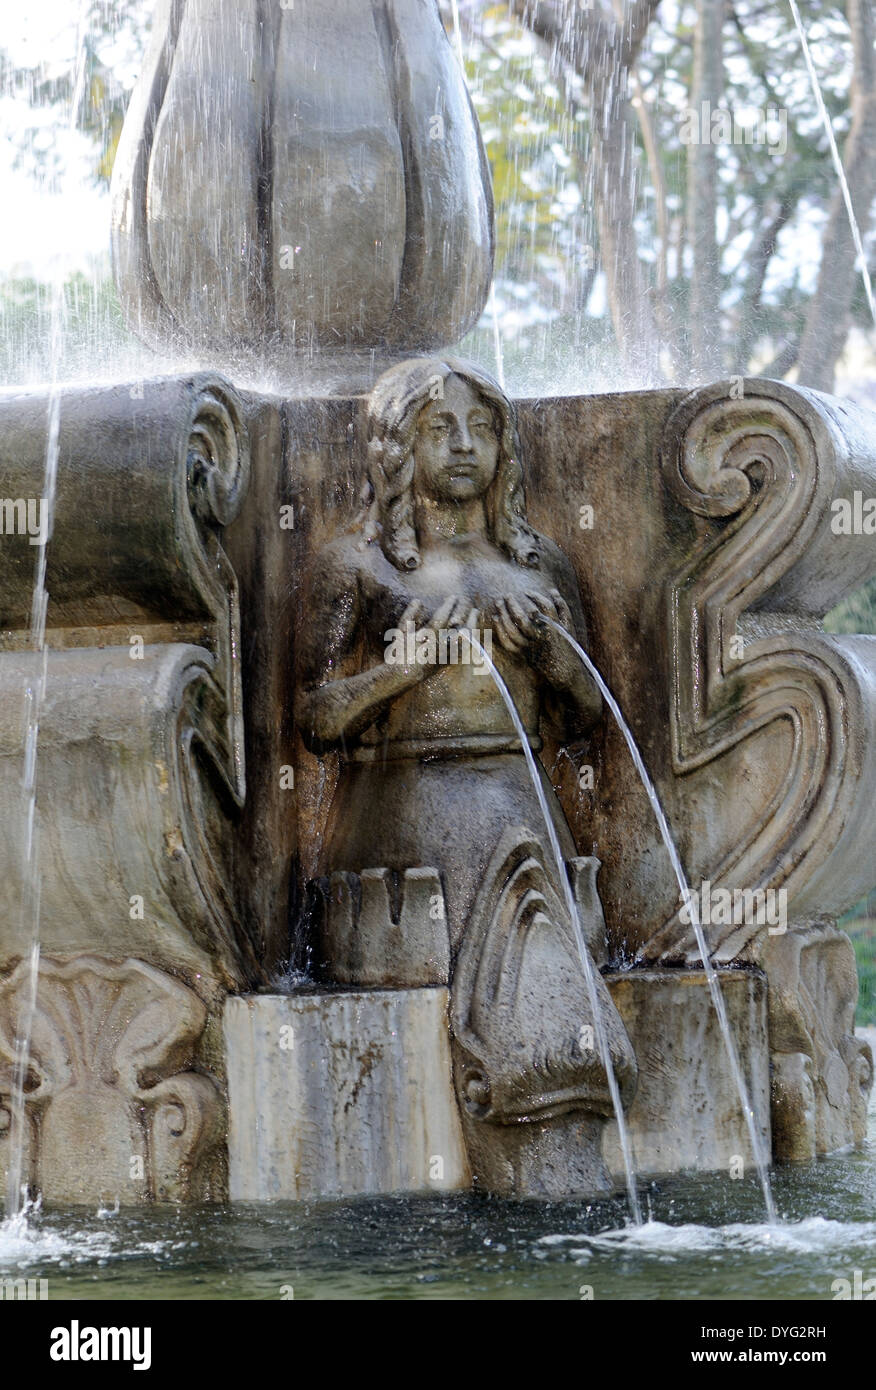 Mermaid in the fountain in Parque Central. Antigua Guatemala, Republic of Guatemala. Stock Photo